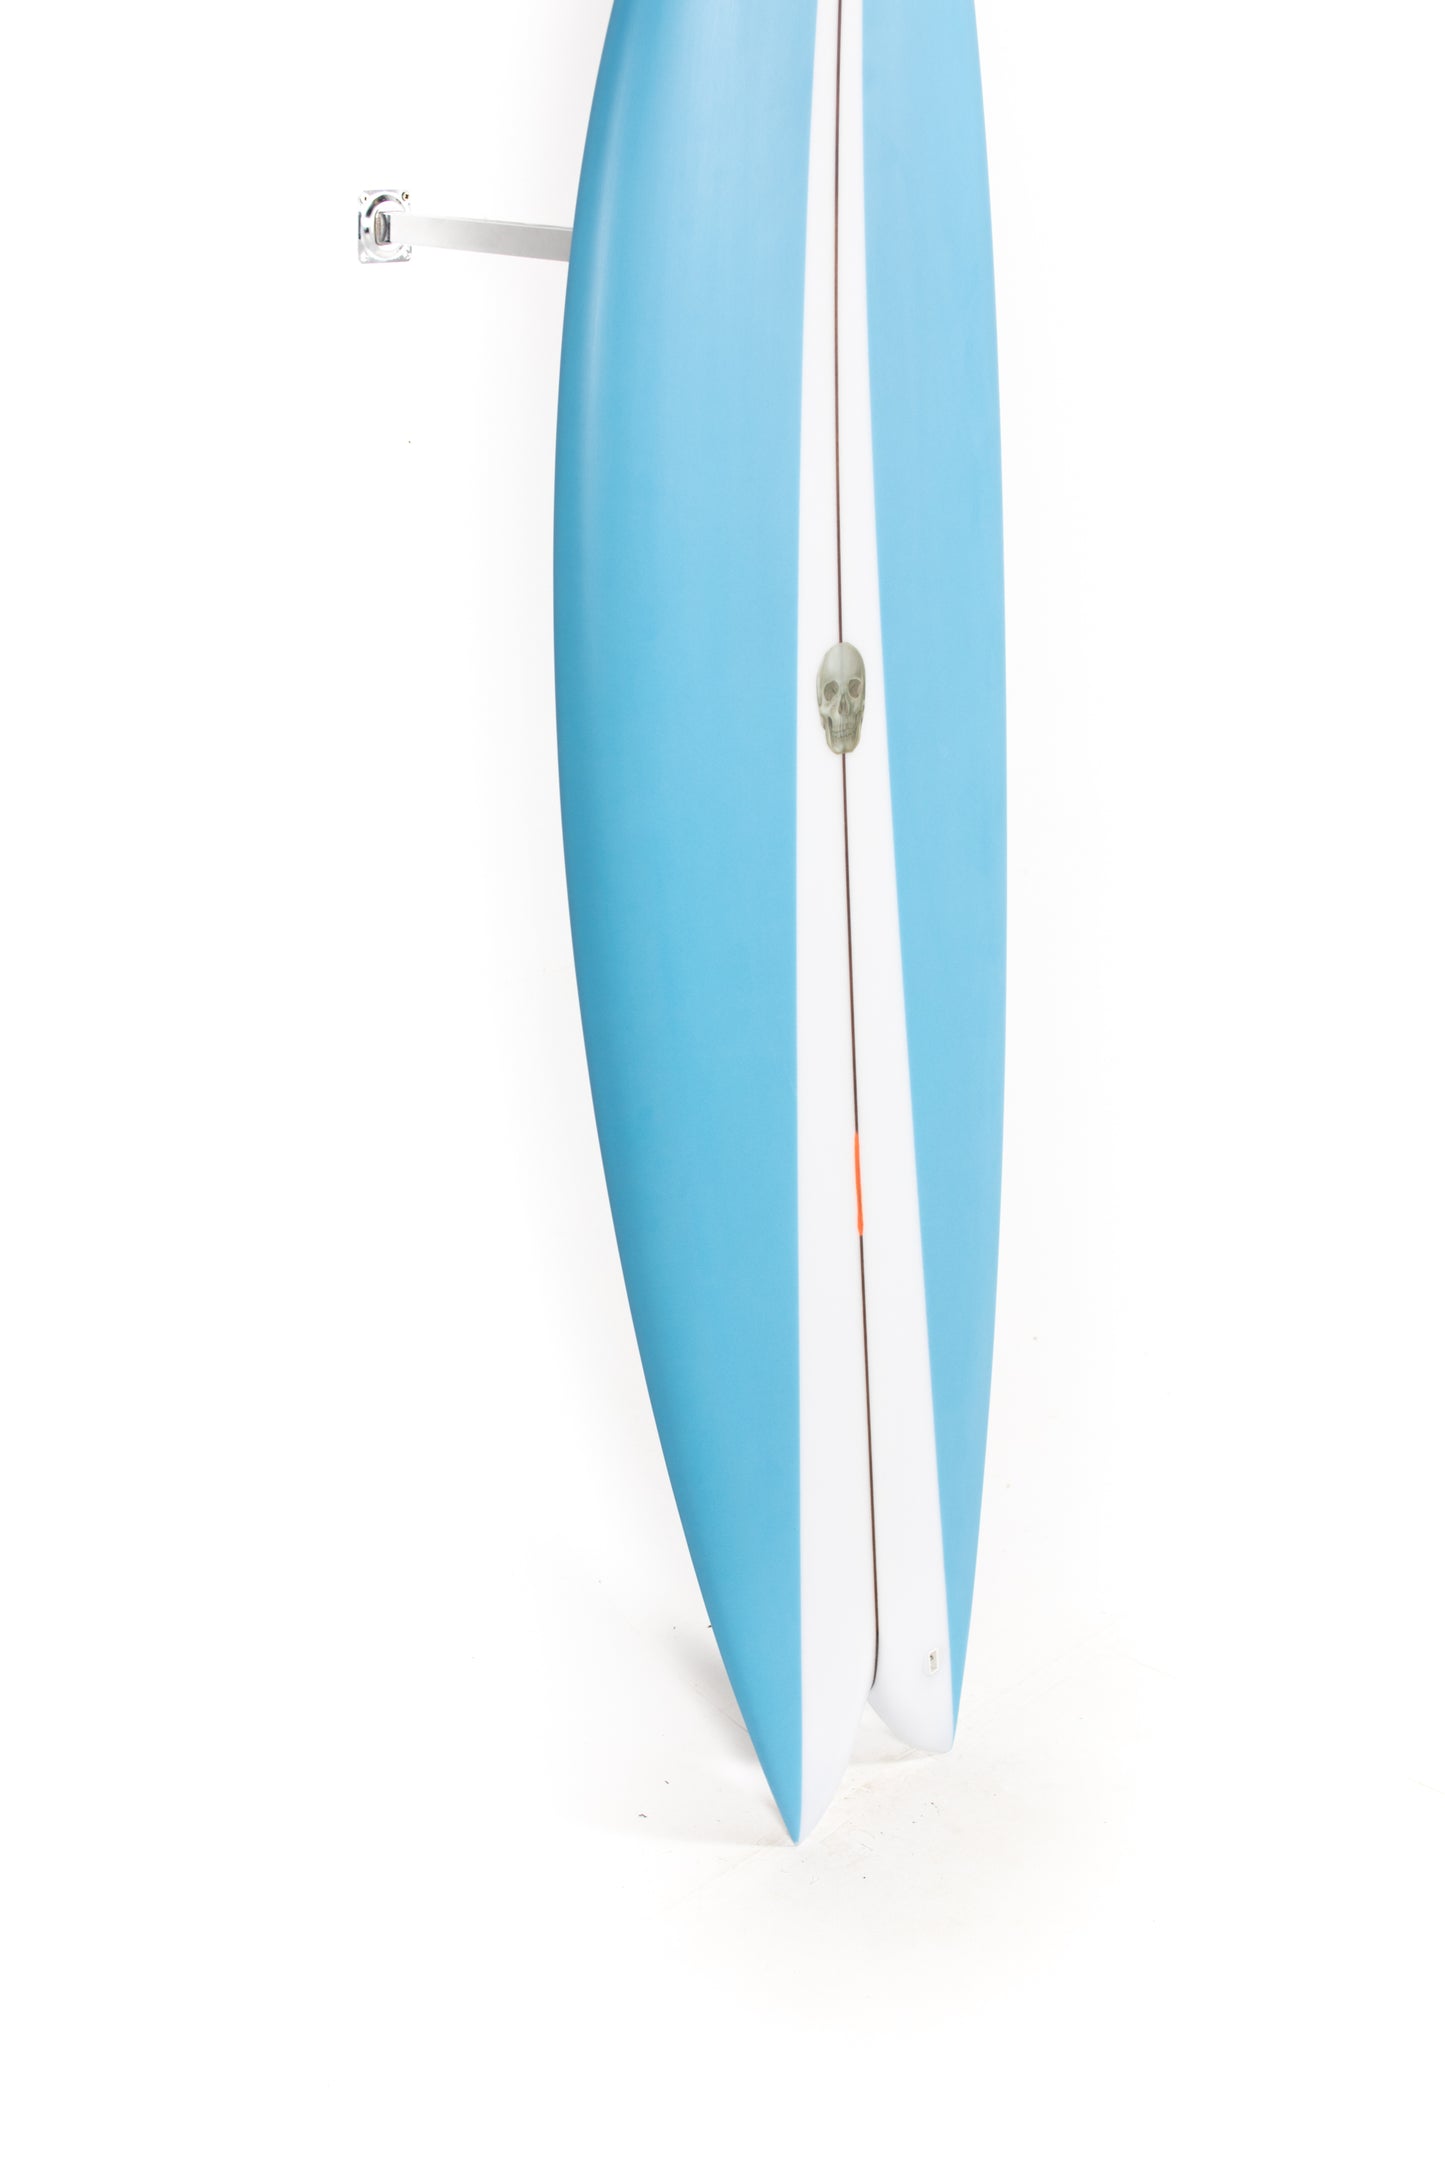 
                  
                    Pukas Surf Shop - Christenson Surfboards - NAUTILUS - 5'10" x 19 7/8 x 2 3/8 - CX05013
                  
                